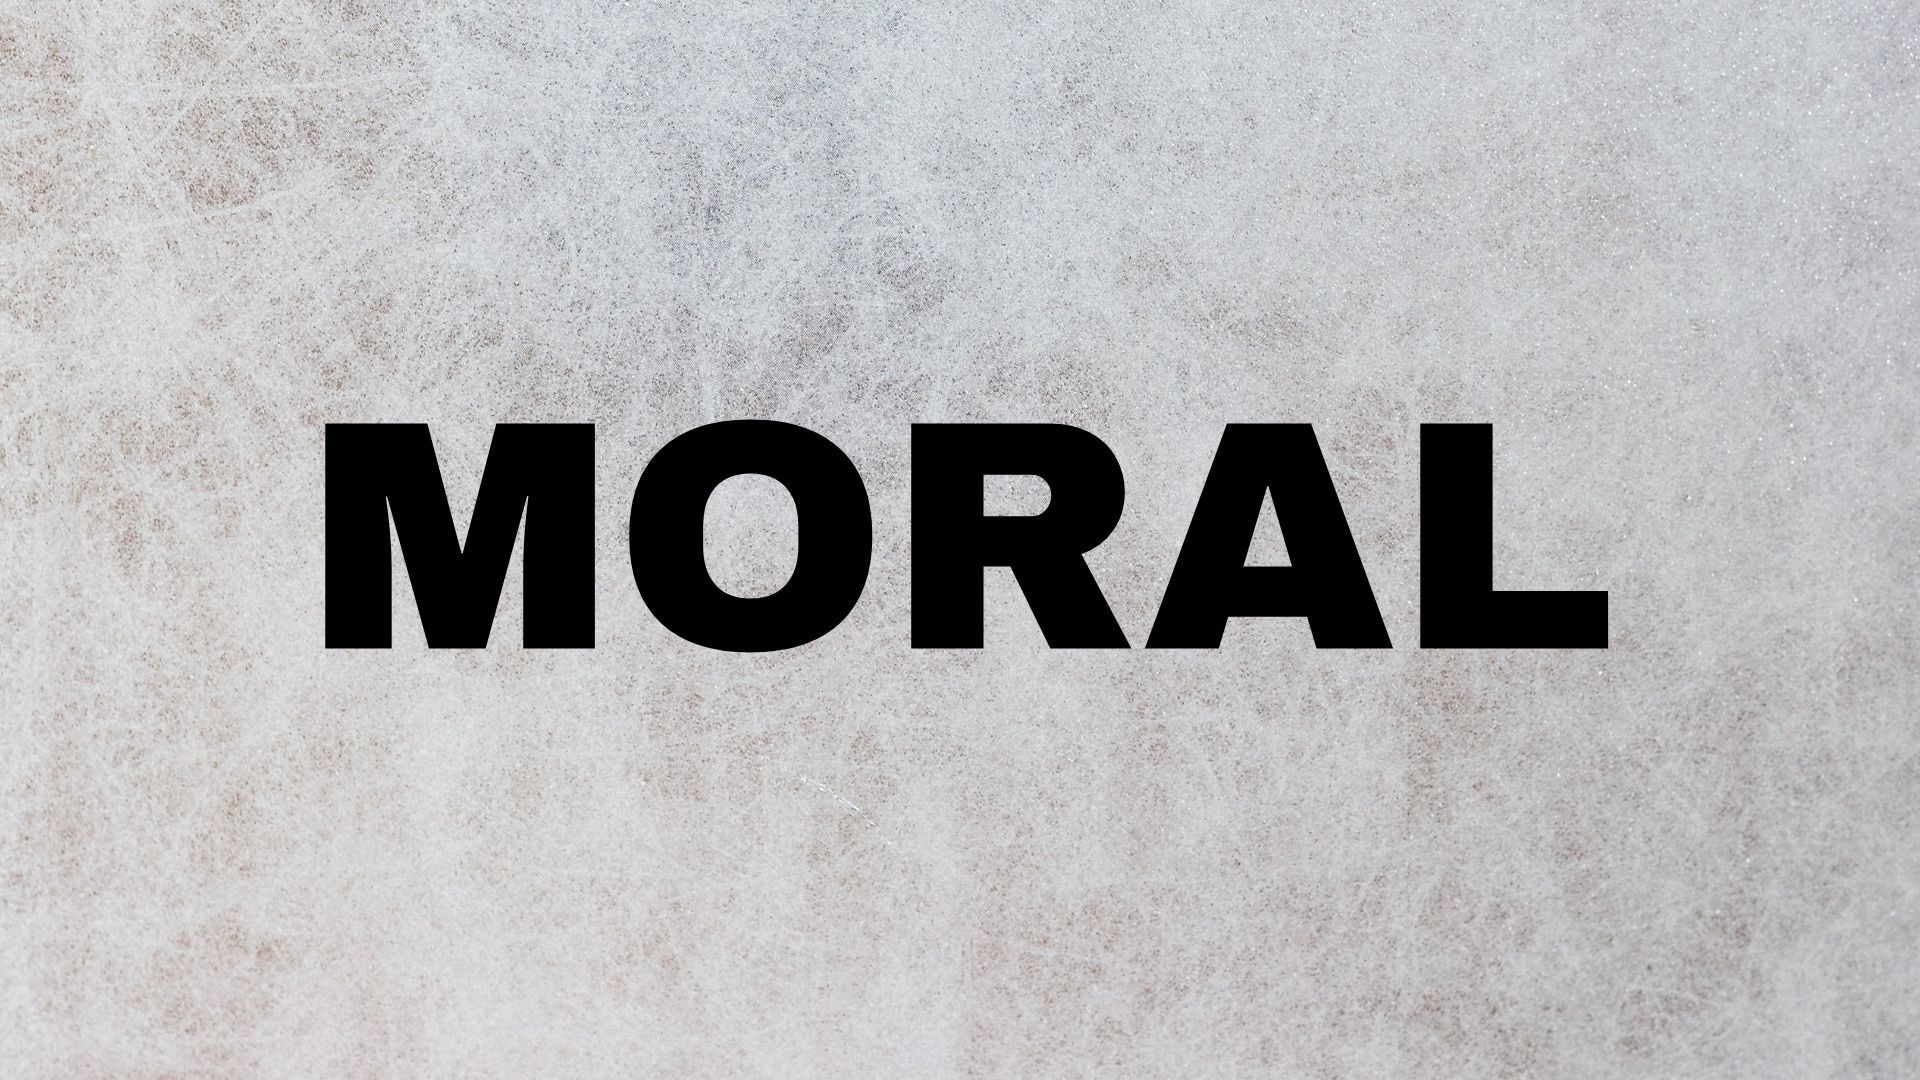 Moral image